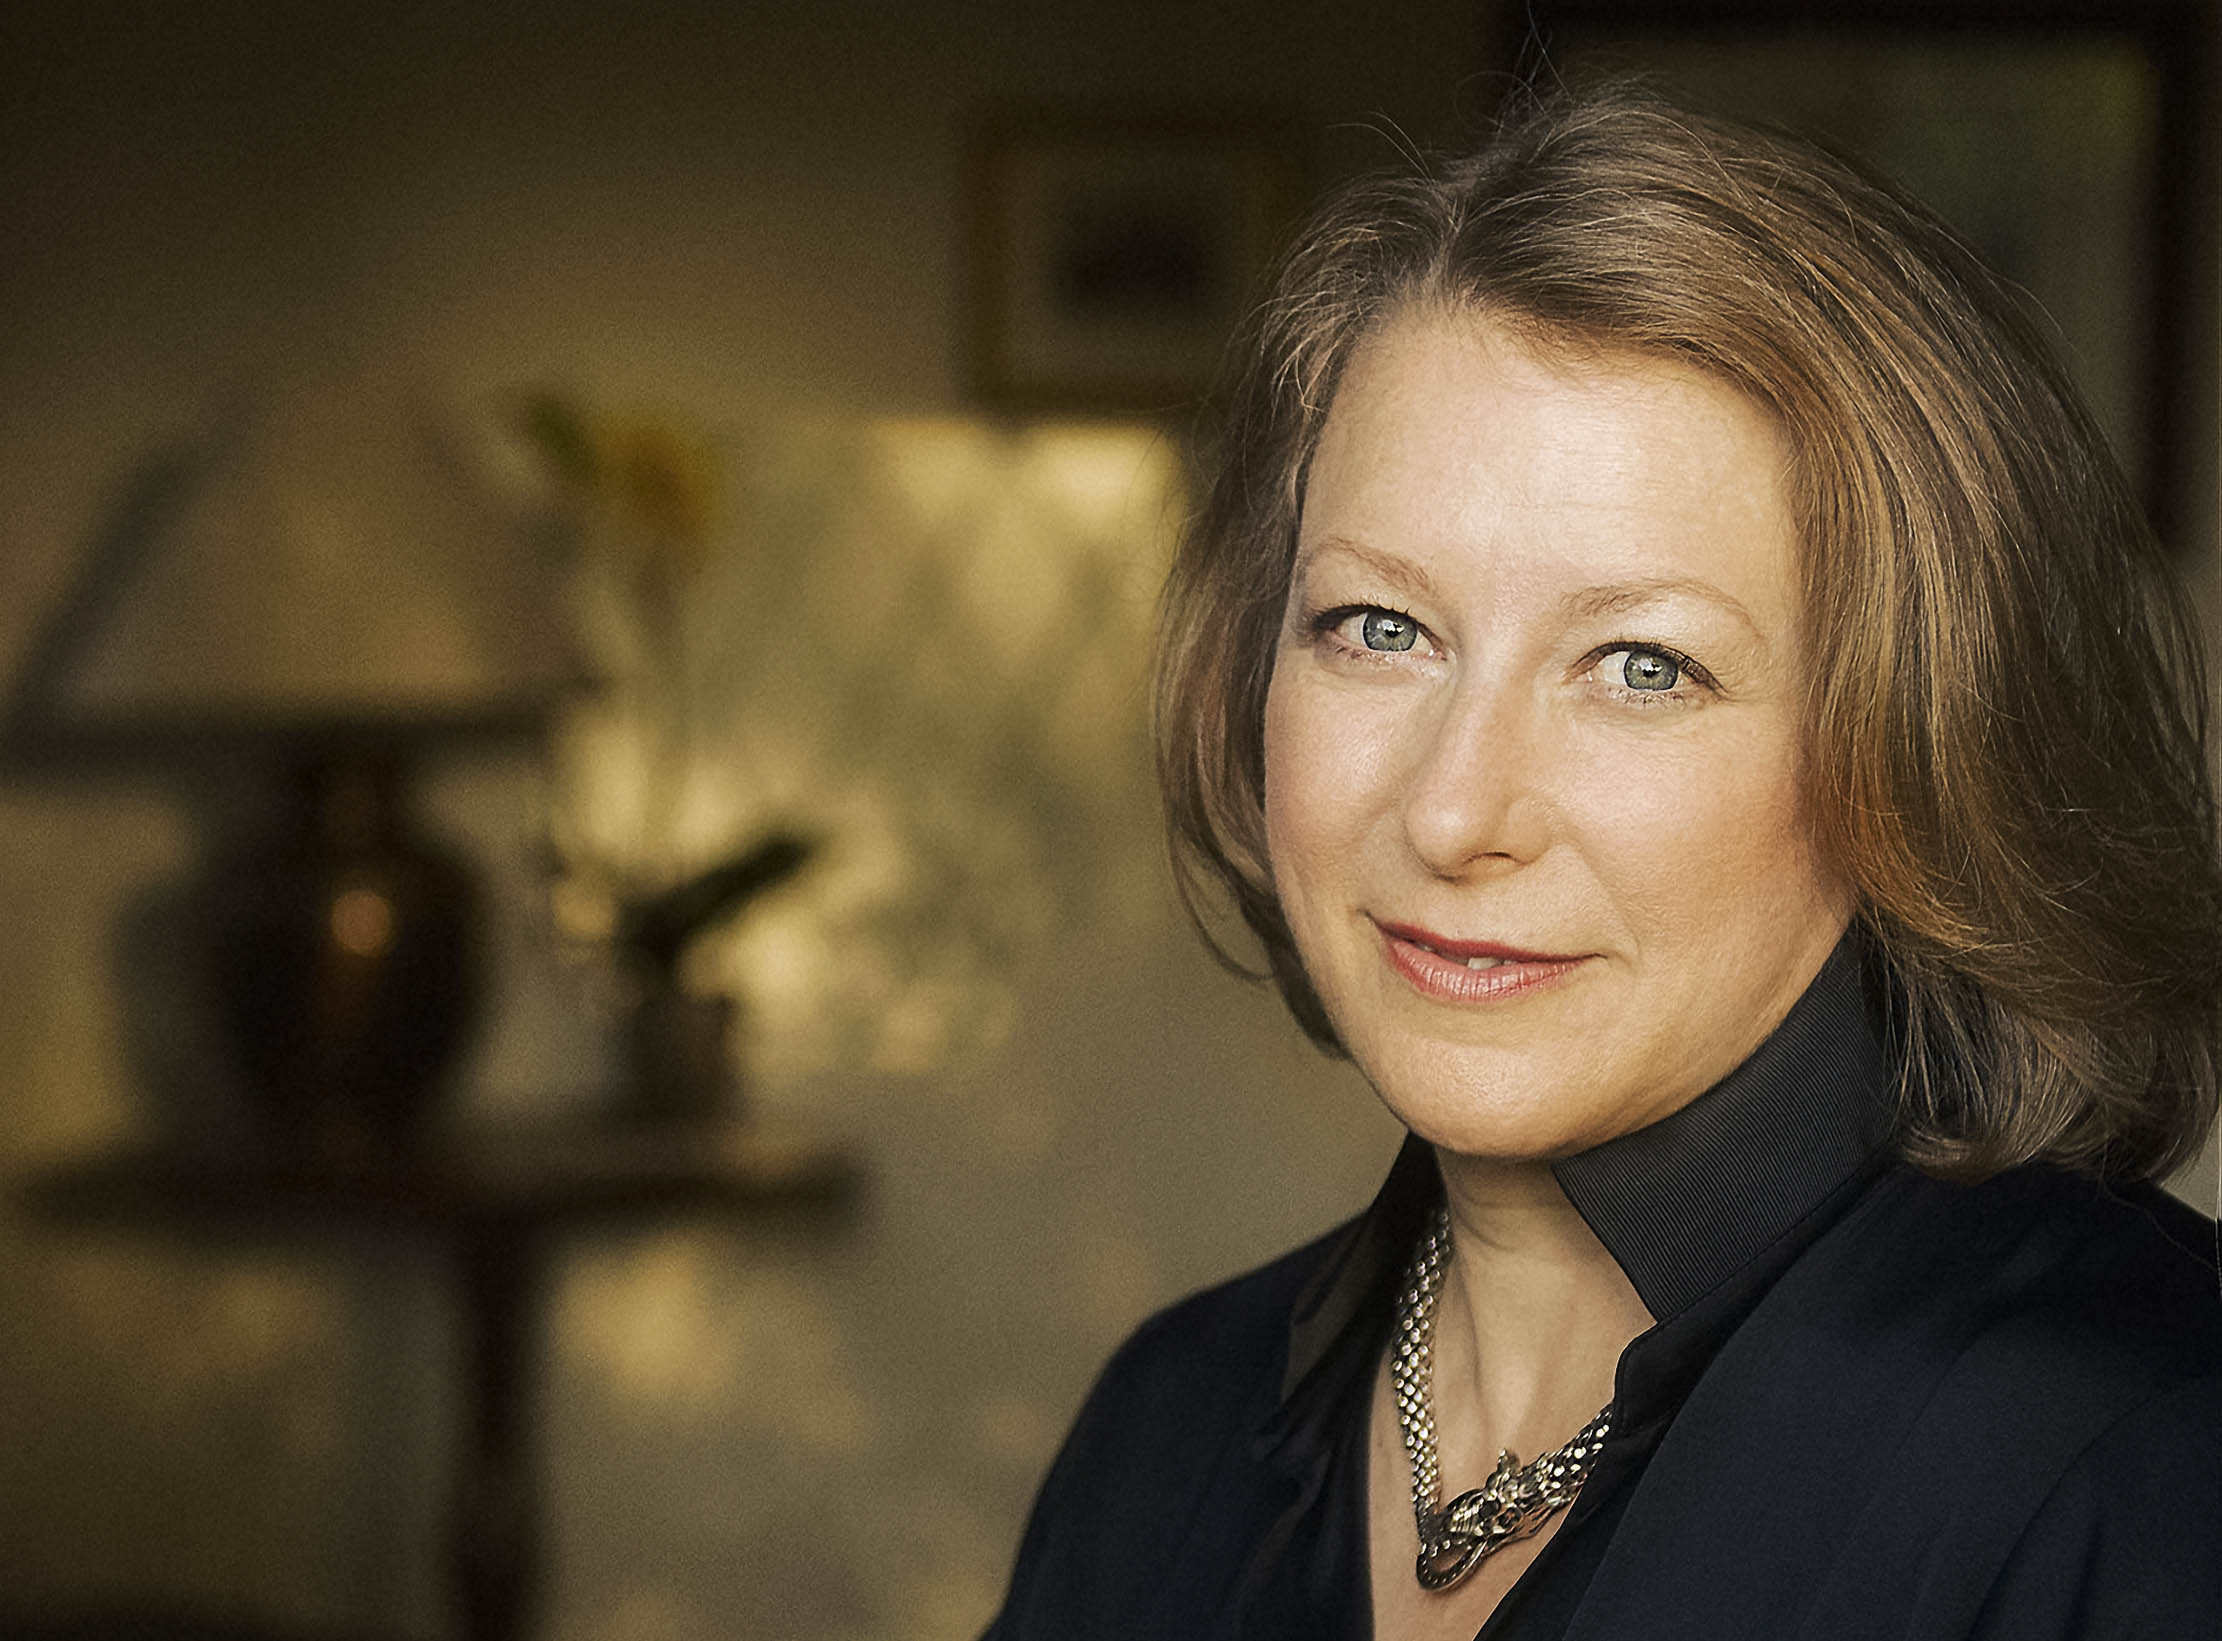 Portrait photo of best-selling author and UC Davis alumna Deborah Harkness